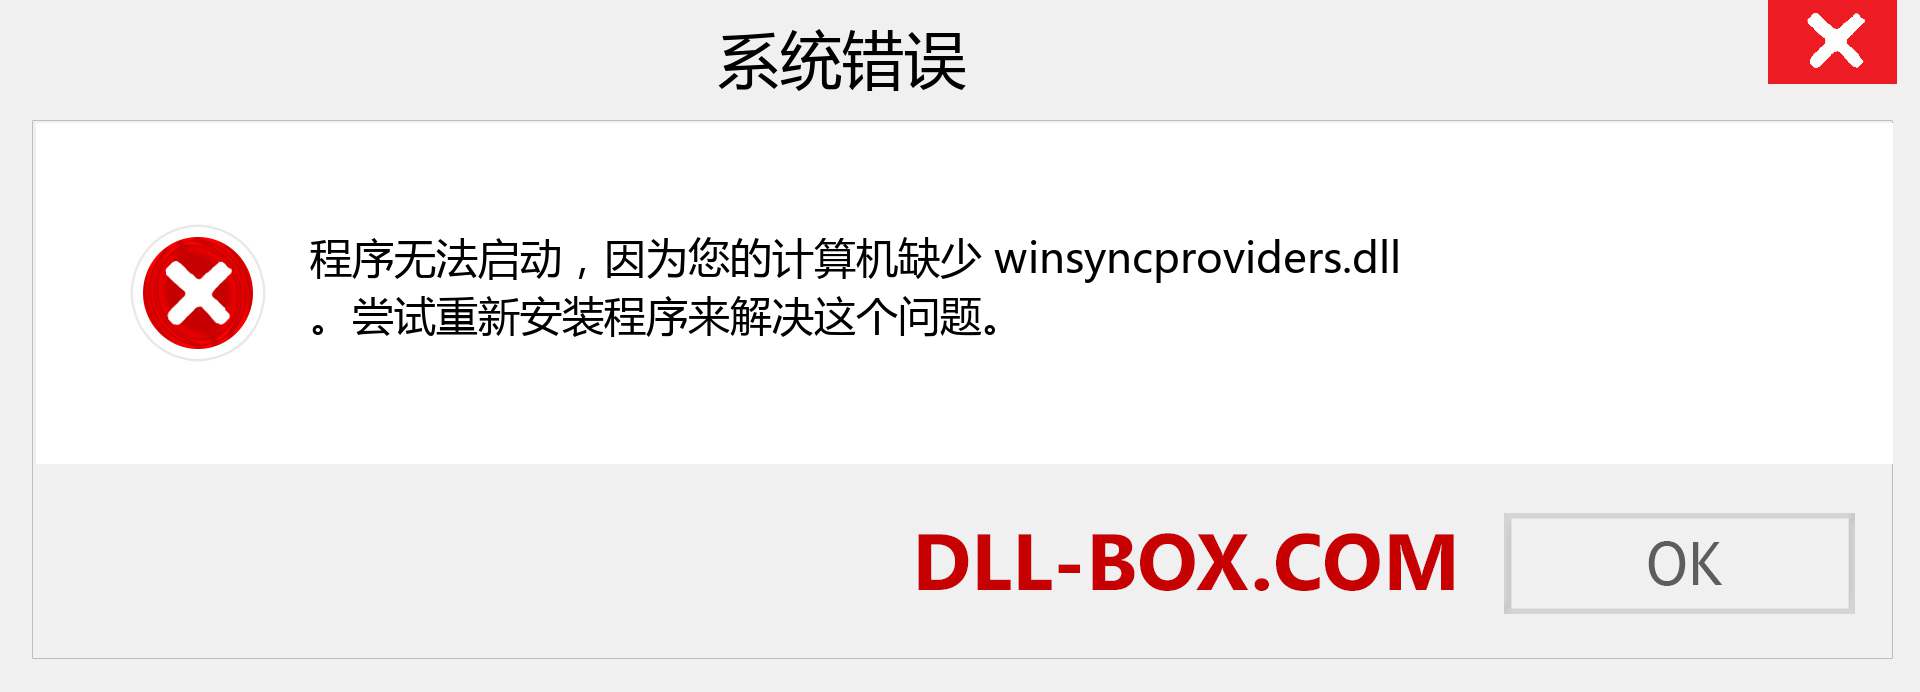 winsyncproviders.dll 文件丢失？。 适用于 Windows 7、8、10 的下载 - 修复 Windows、照片、图像上的 winsyncproviders dll 丢失错误